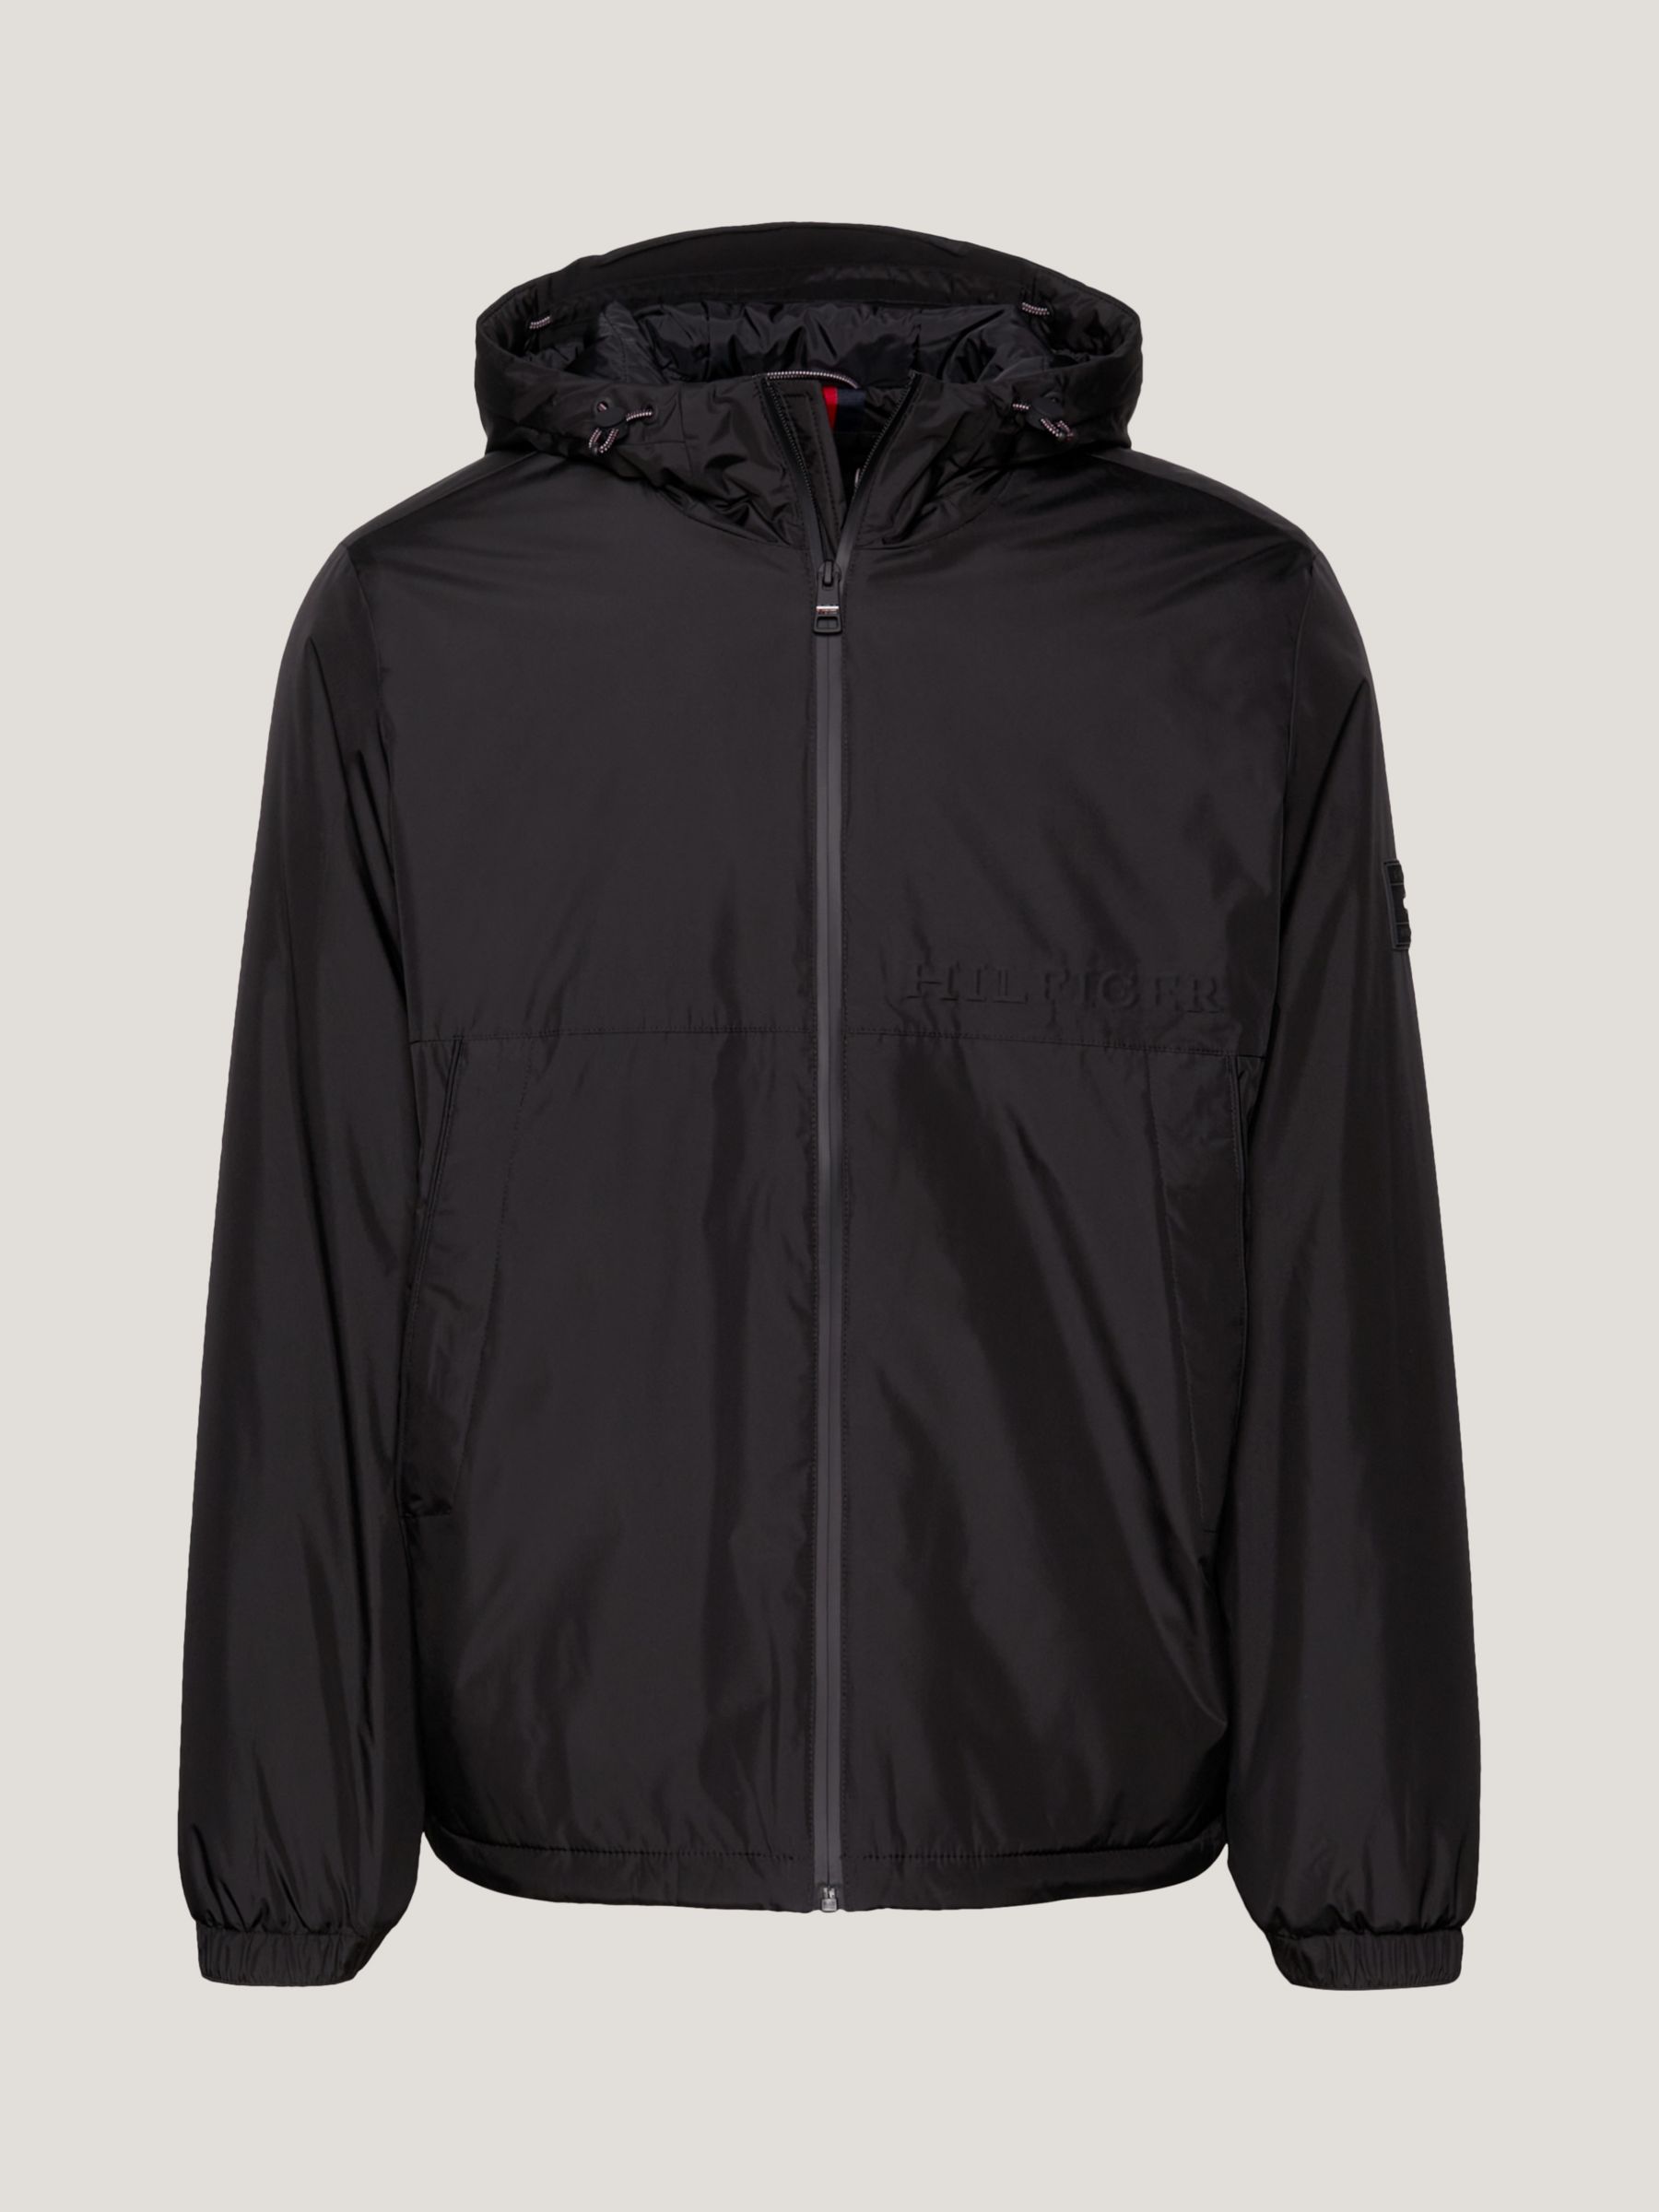 Tommy Hilfiger Portland Hooded Jacket, Black at John Lewis & Partners